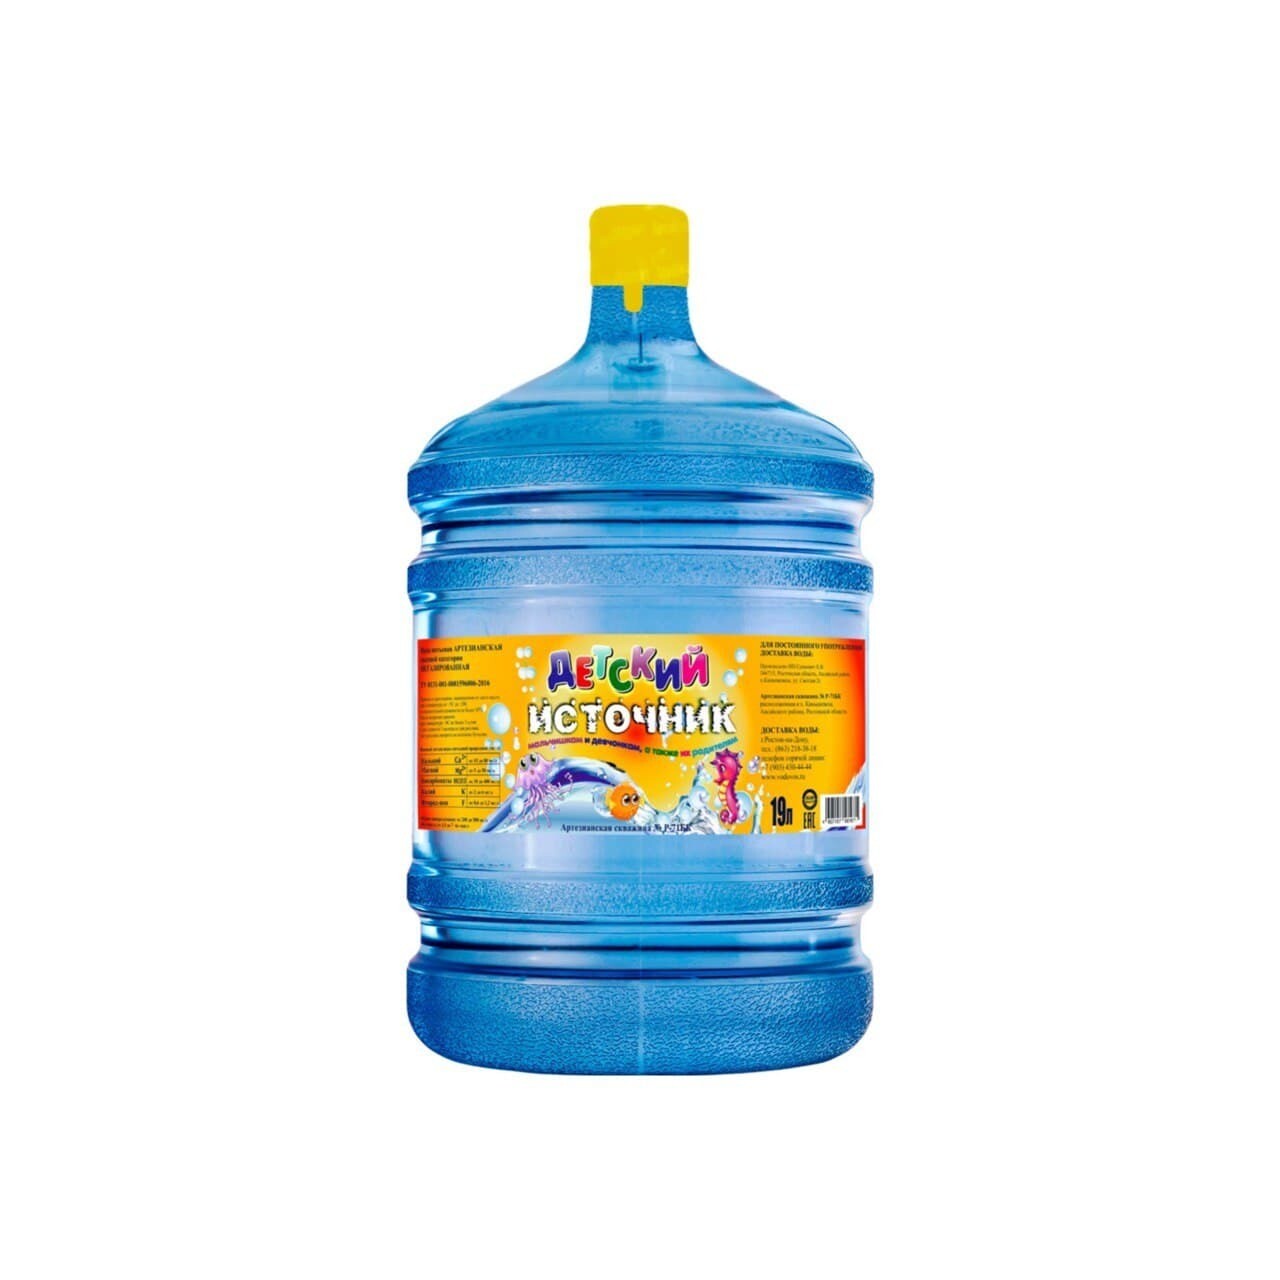 Магазин воды 19 литров. Вода 19 литров. Детская вода 19 литров. Вода детская 19 литров с доставкой. Название воды в бутылках 19 литров.